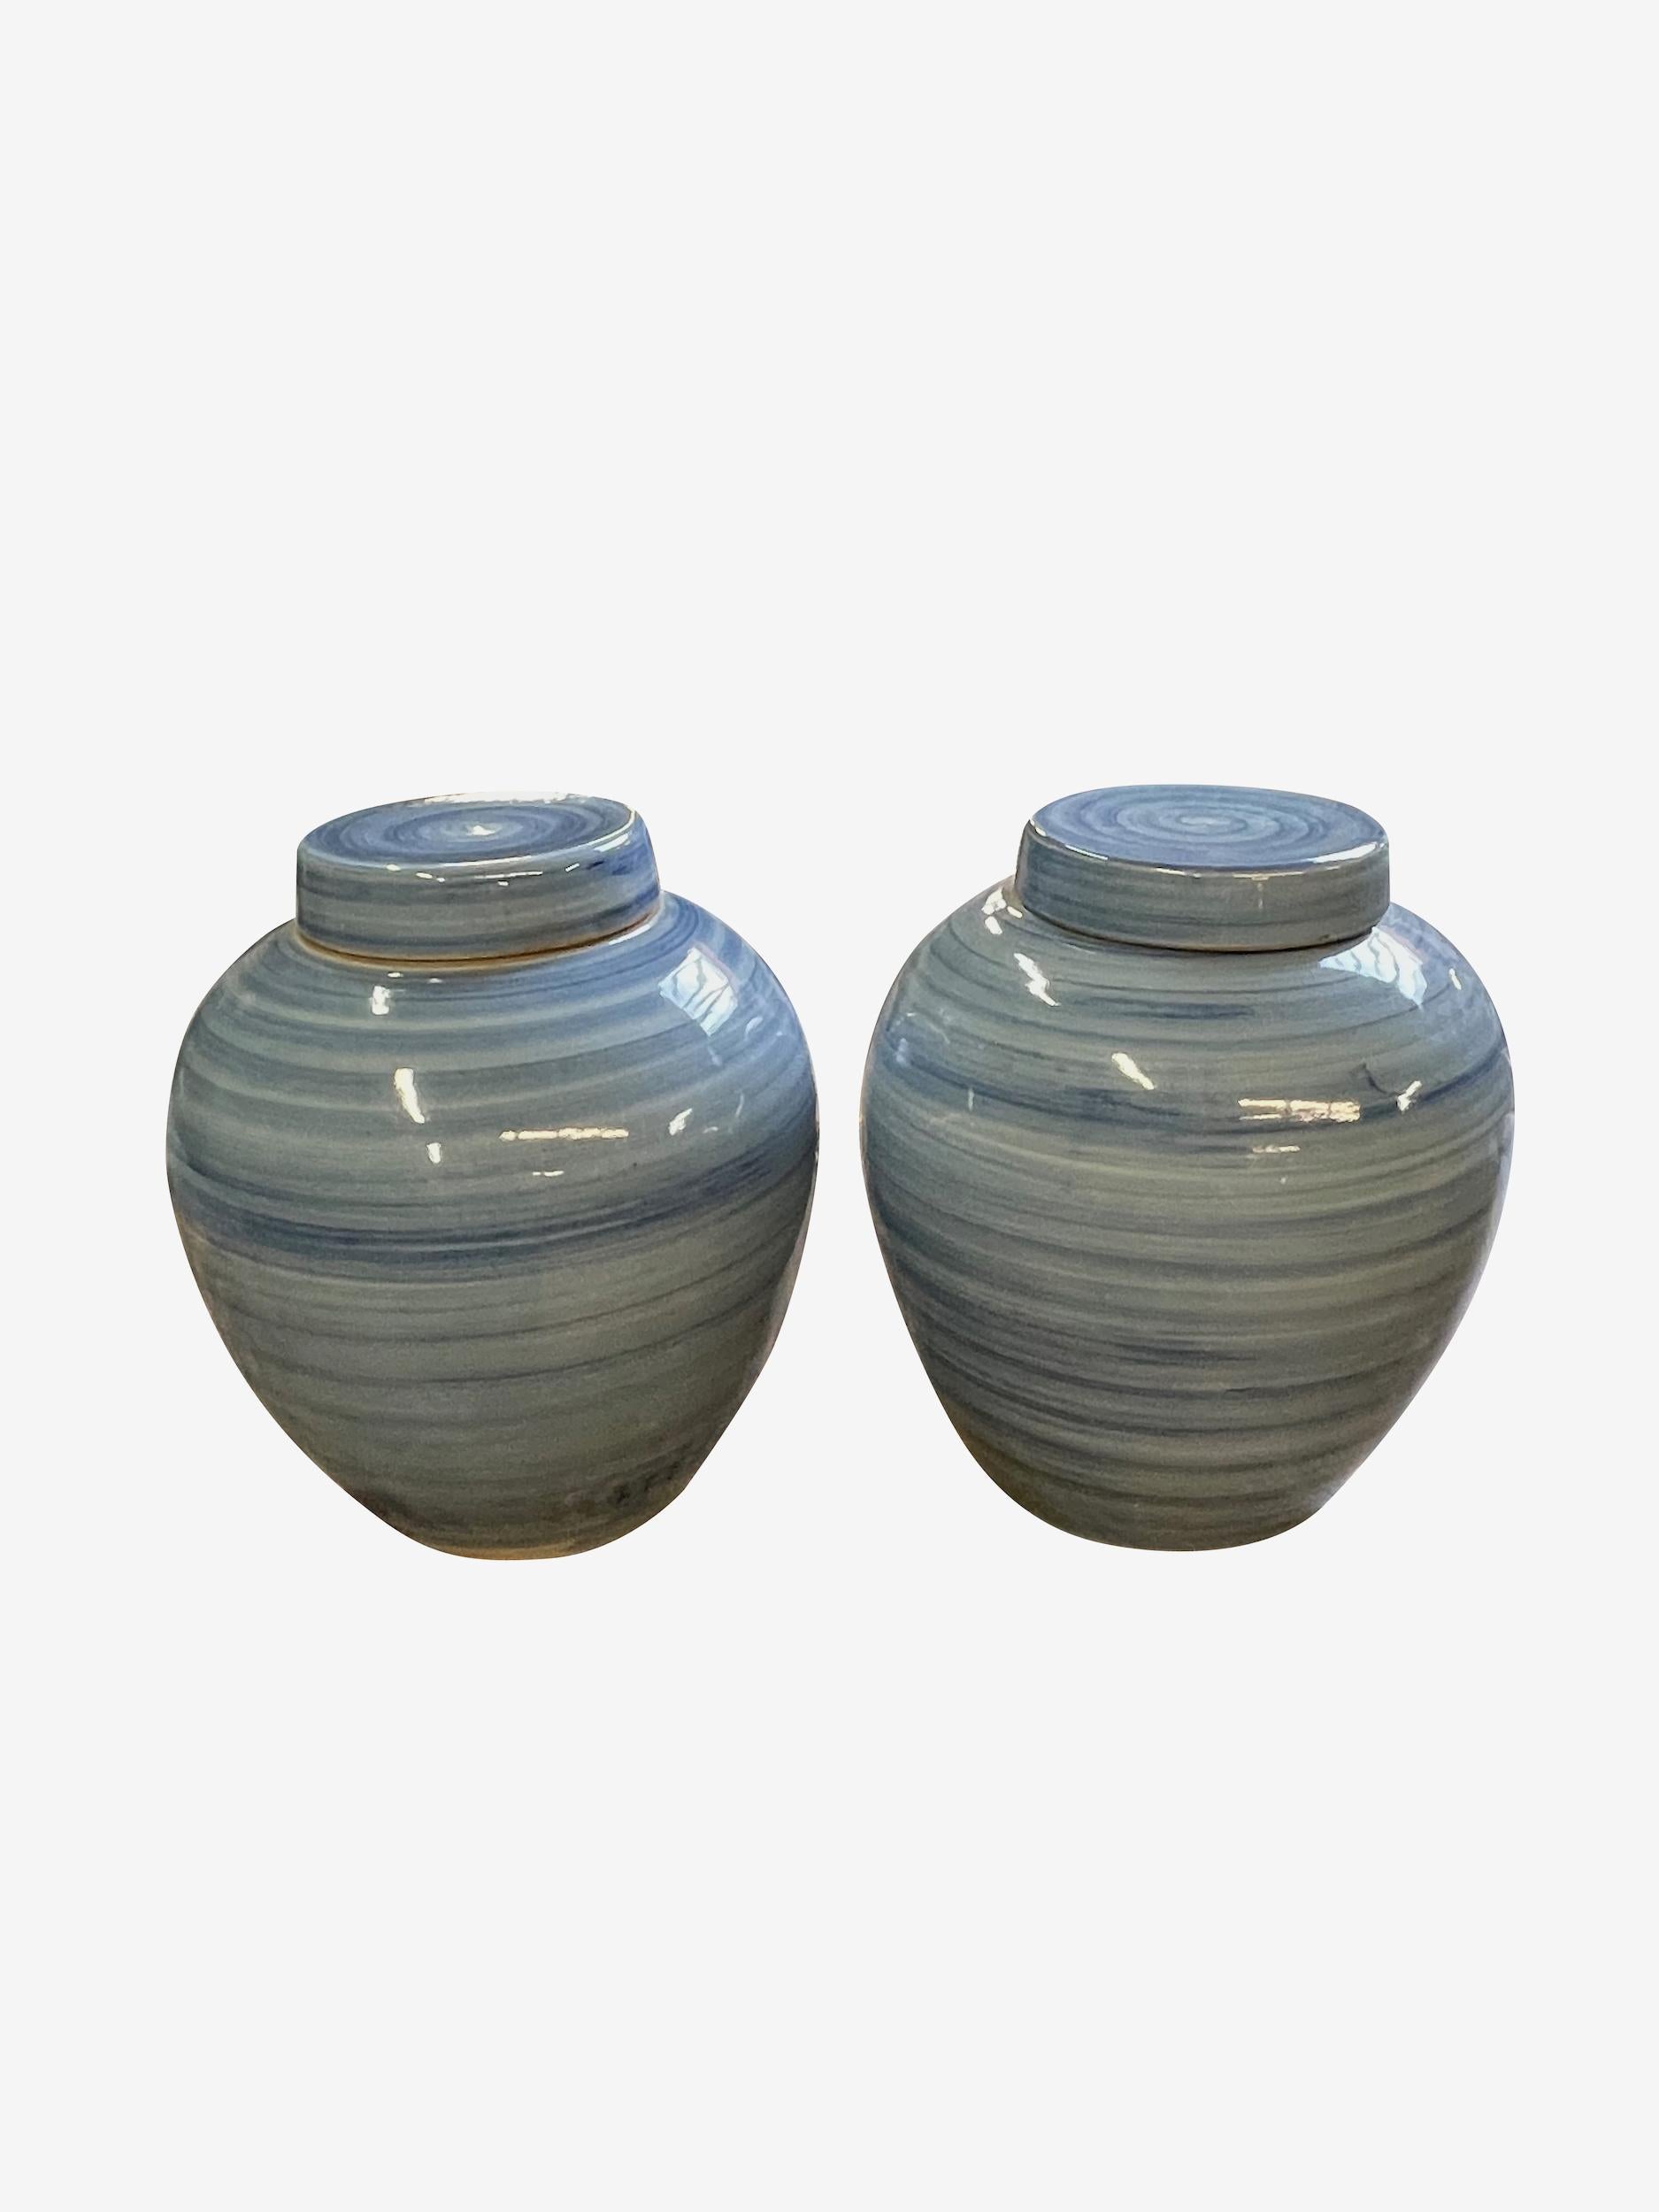 Vase contemporain chinois à couvercle strié de motifs bleus.
Deux disponibles.